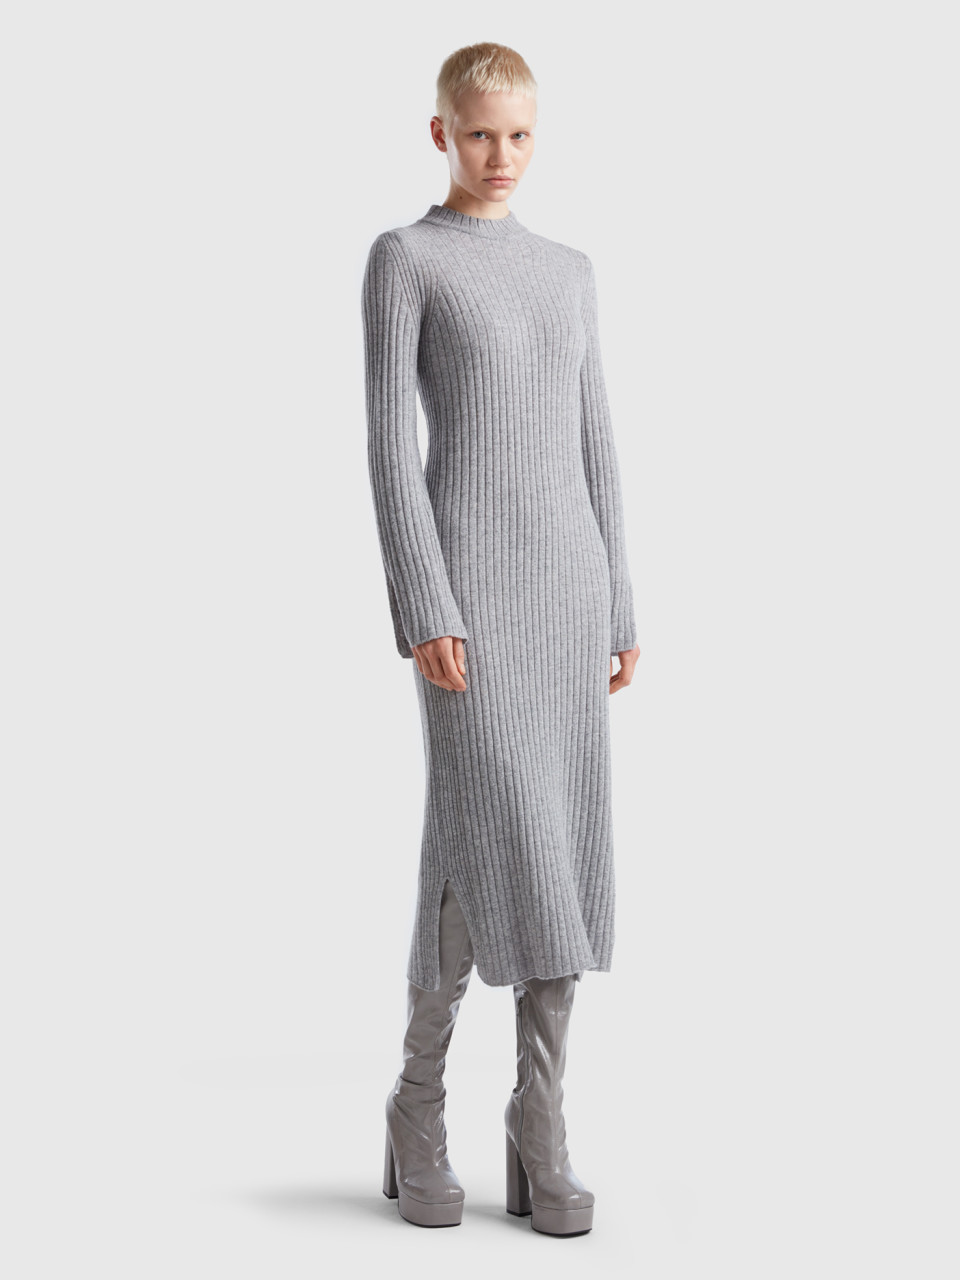 Benetton, Knit Dress With Slits, Light Gray, Women